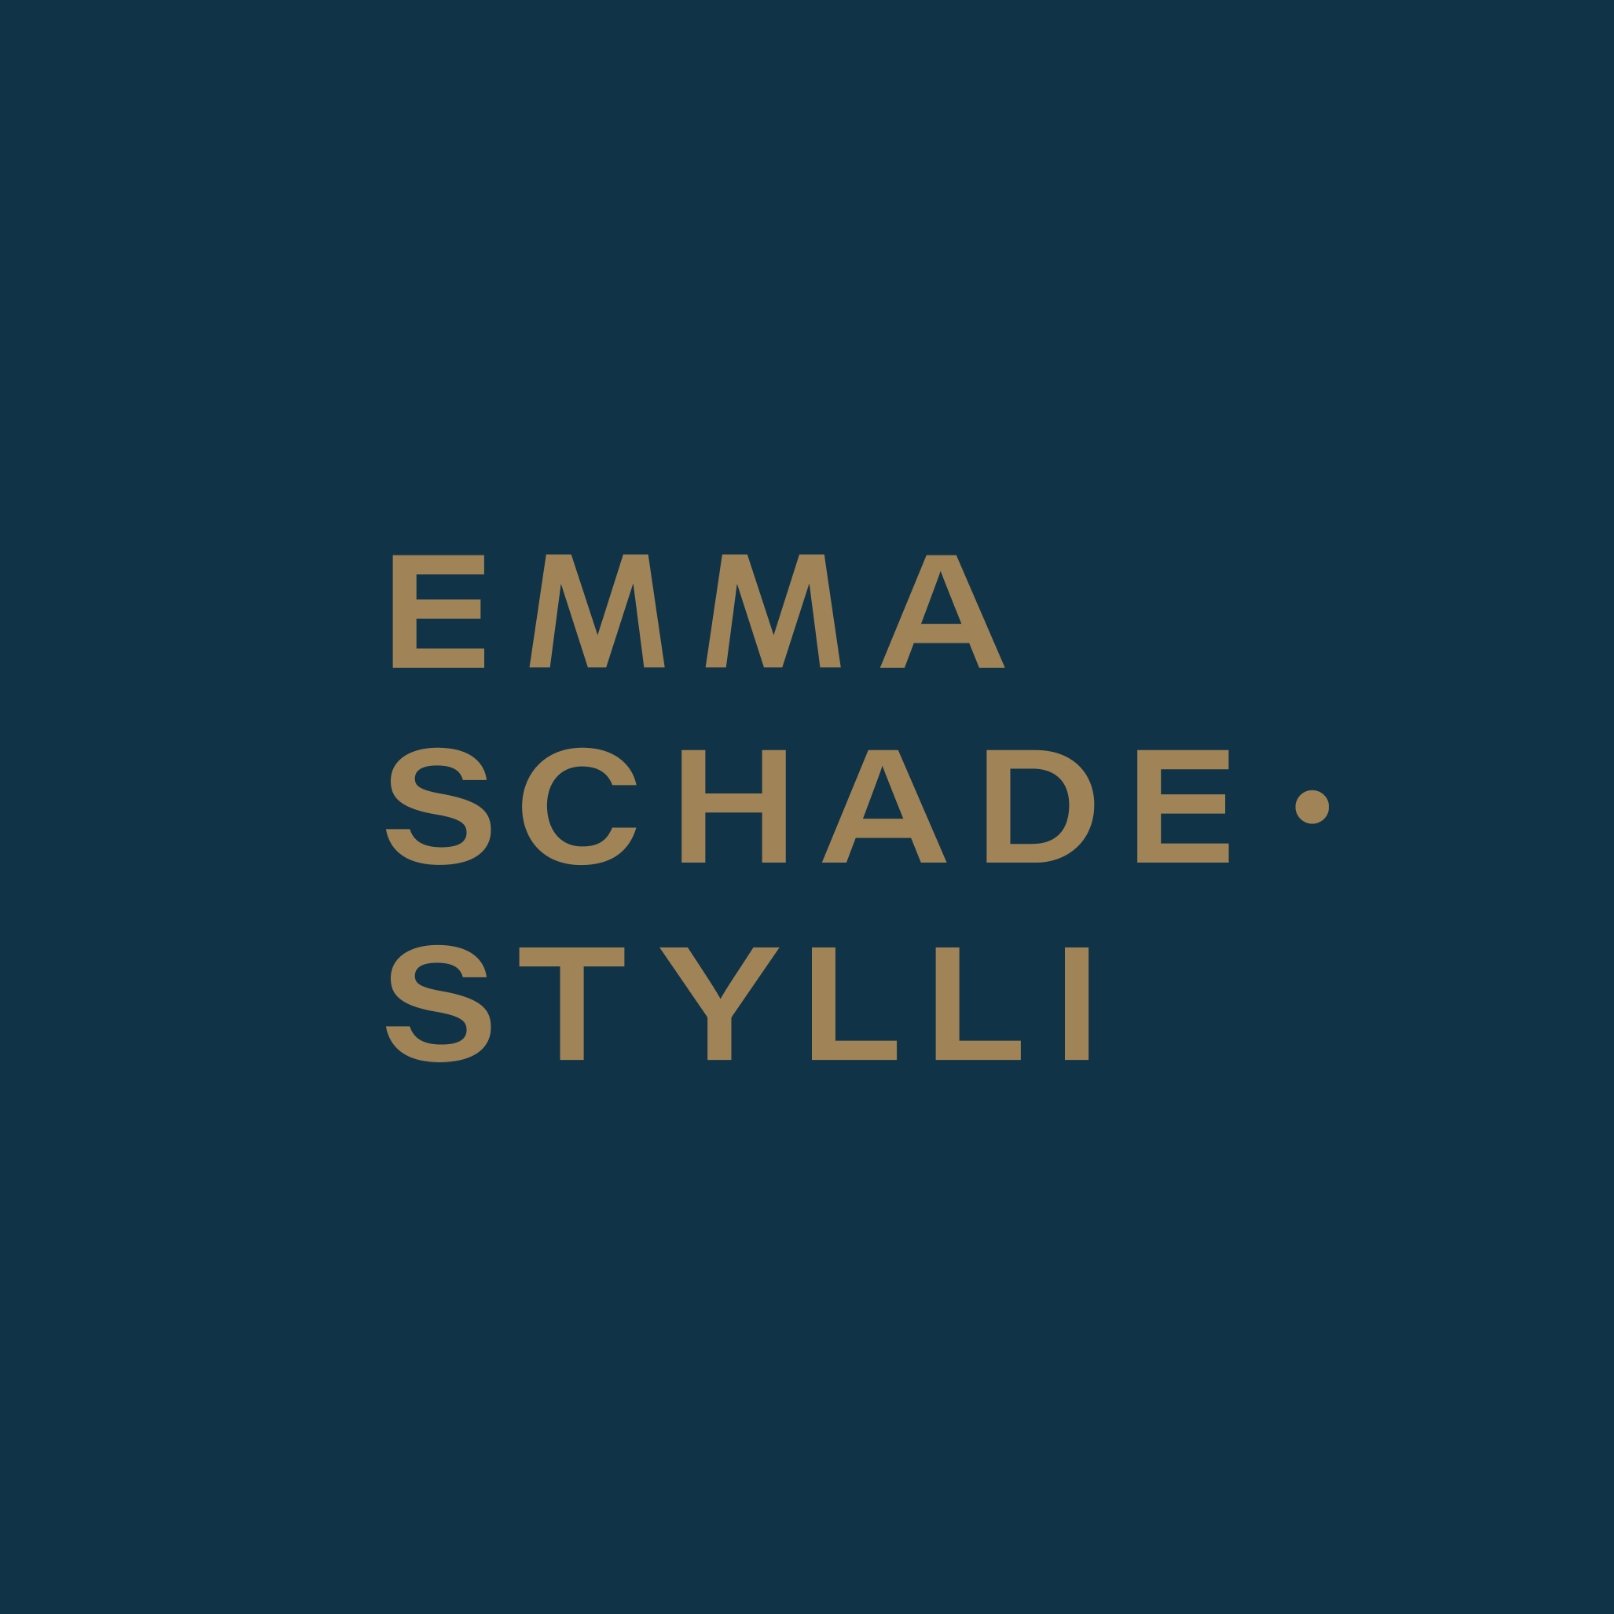 Minimalist typographic wordmark design for Emma Schade-Stylli